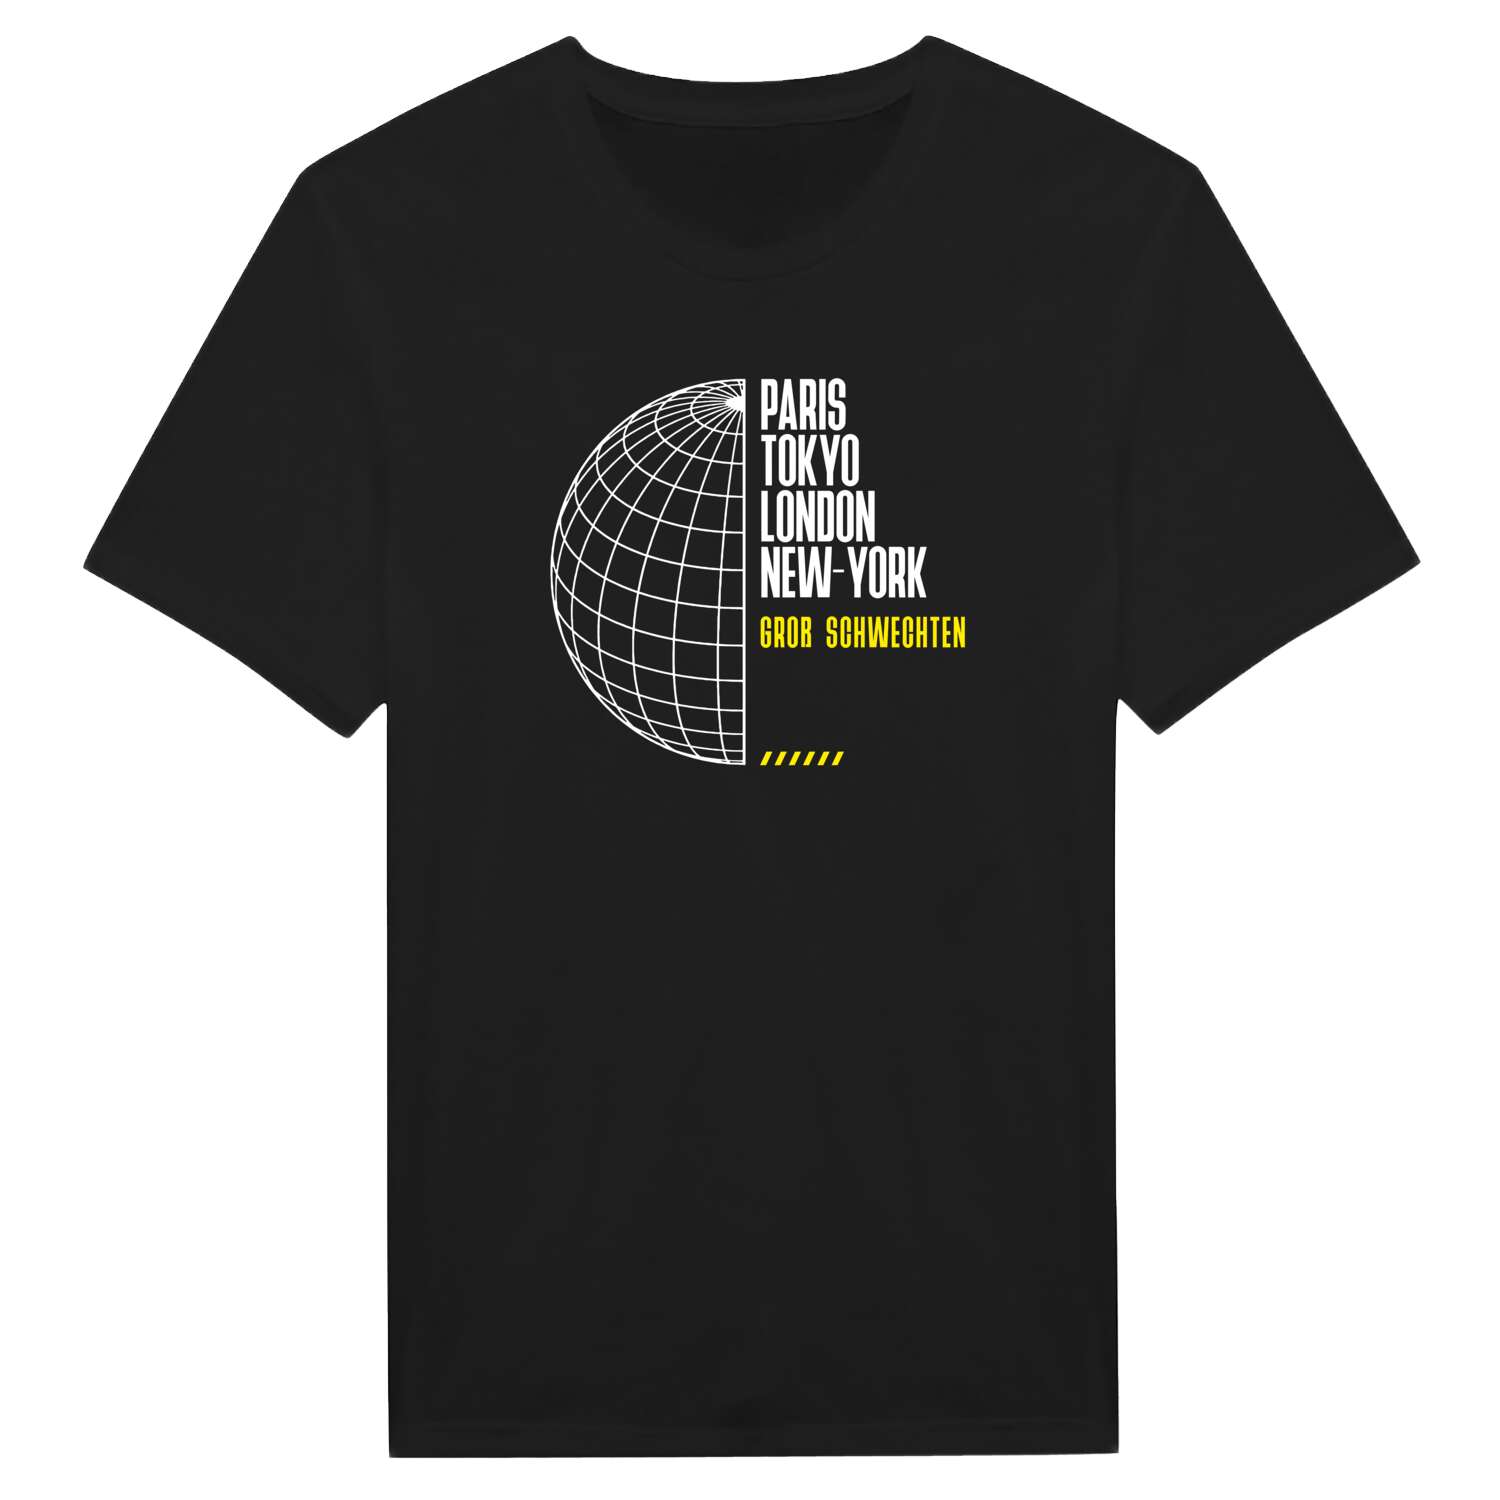 Groß Schwechten T-Shirt »Paris Tokyo London«